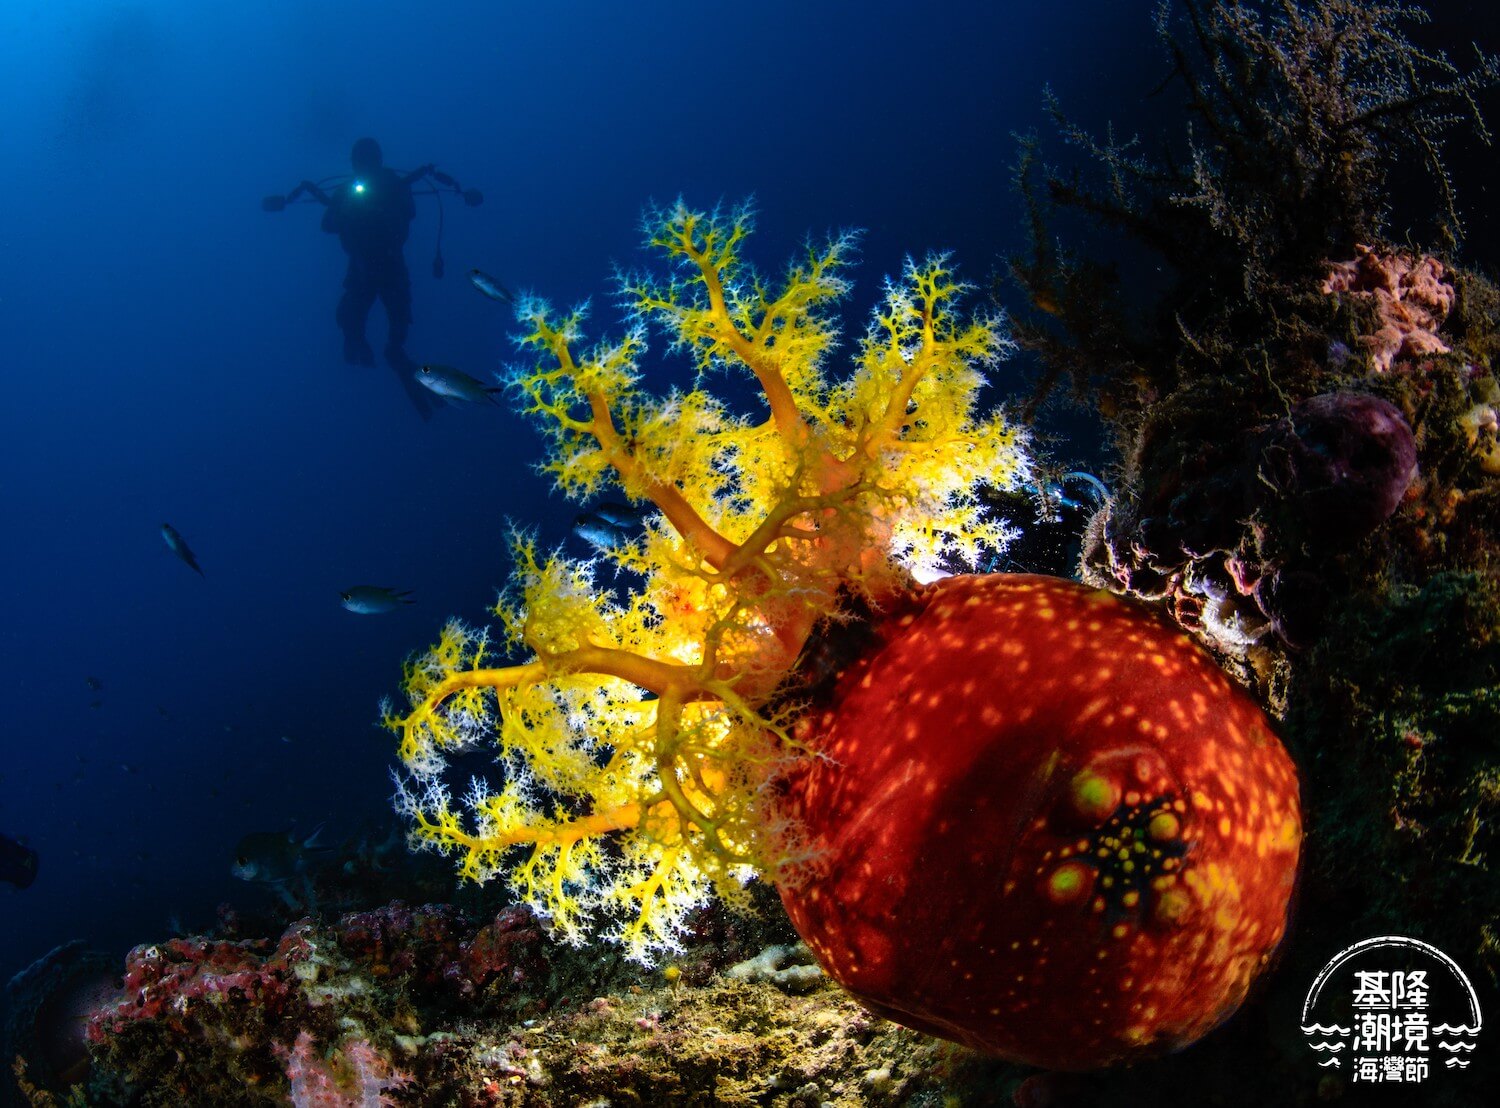 B11 2 2022 基隆潮境資源保育區 海洋公民科學家生物資料庫